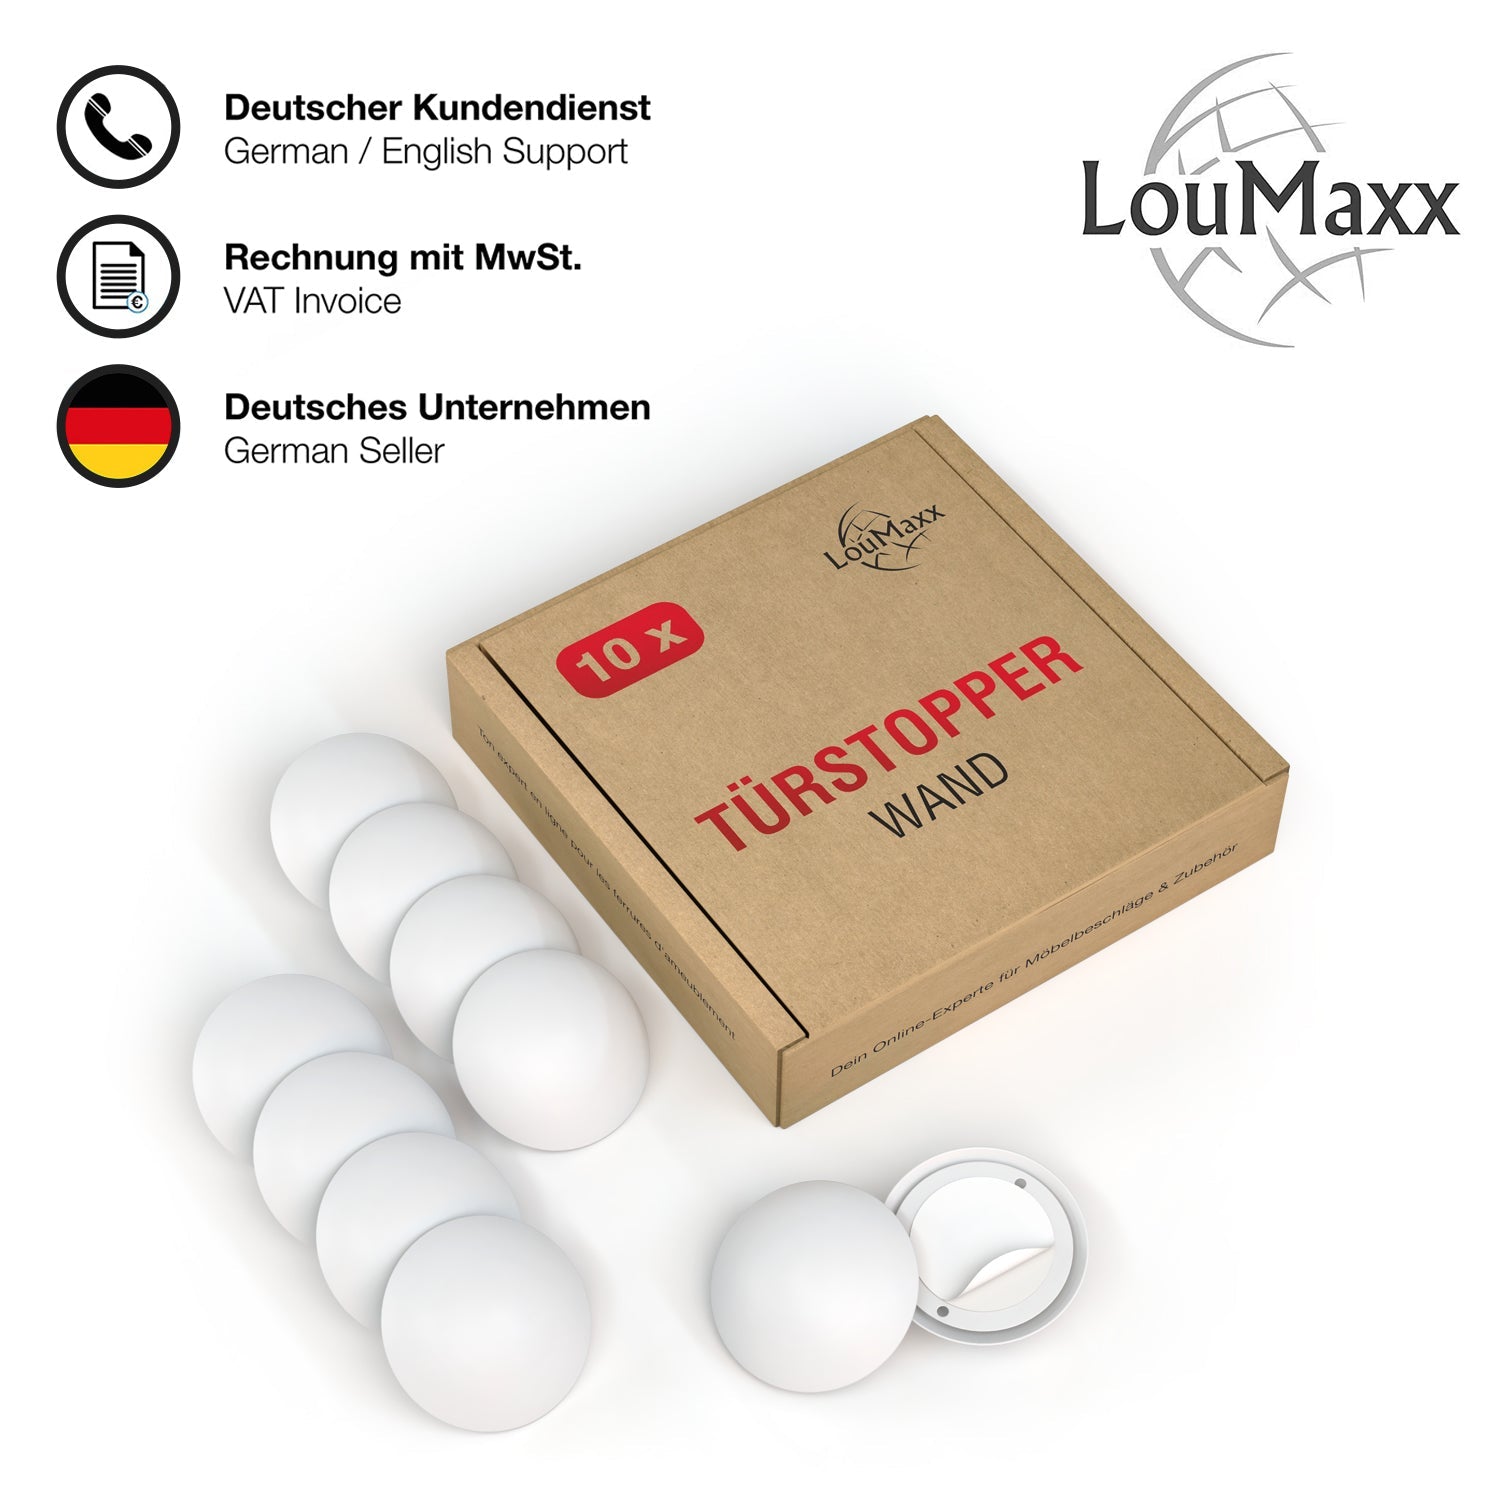 LouMaxx Türpuffer - 2er Set weiße Wandpuffer Ø 40 mm - Anschlagpuffer - Elastikpuffer - Anschlagdämpfer - Türstopper Wand